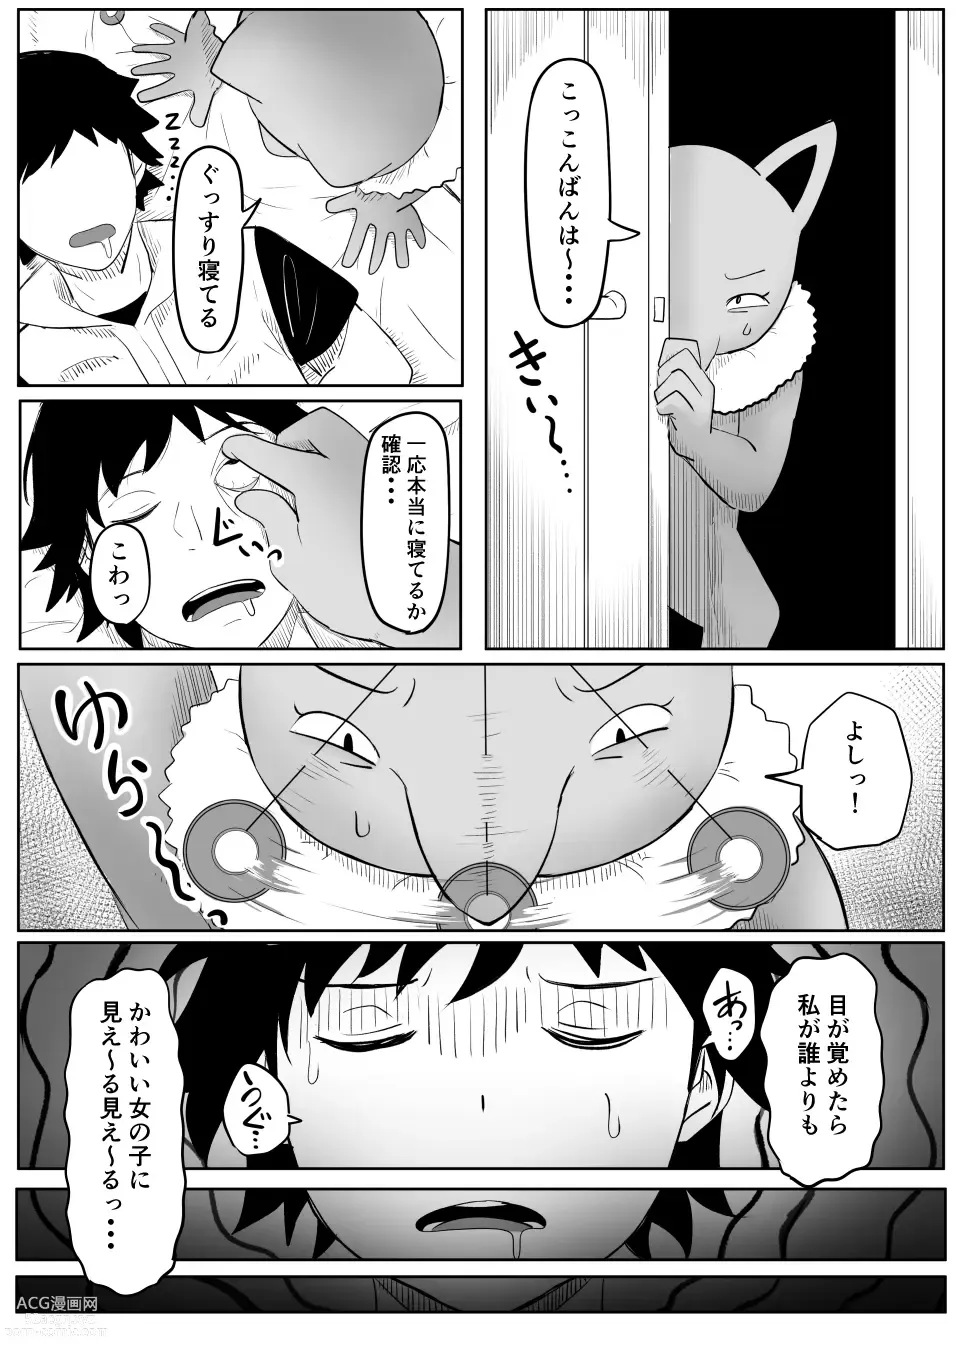 Page 14 of doujinshi Koi o Shita Sleeper-chan.